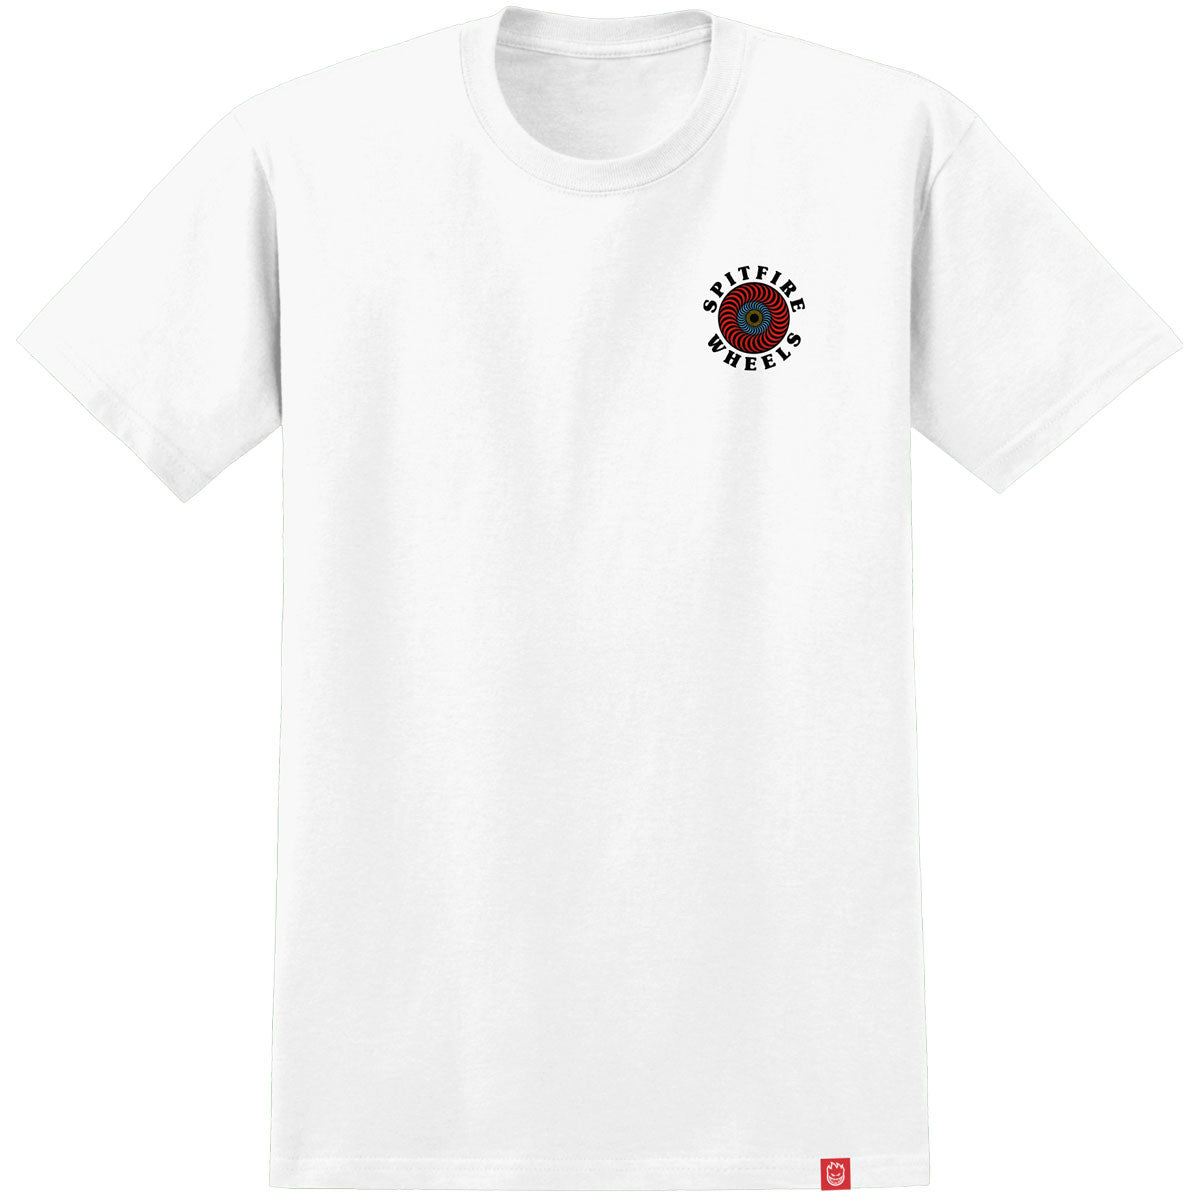 Spitfire Og Classic Fill T-Shirt - White/Multi image 2